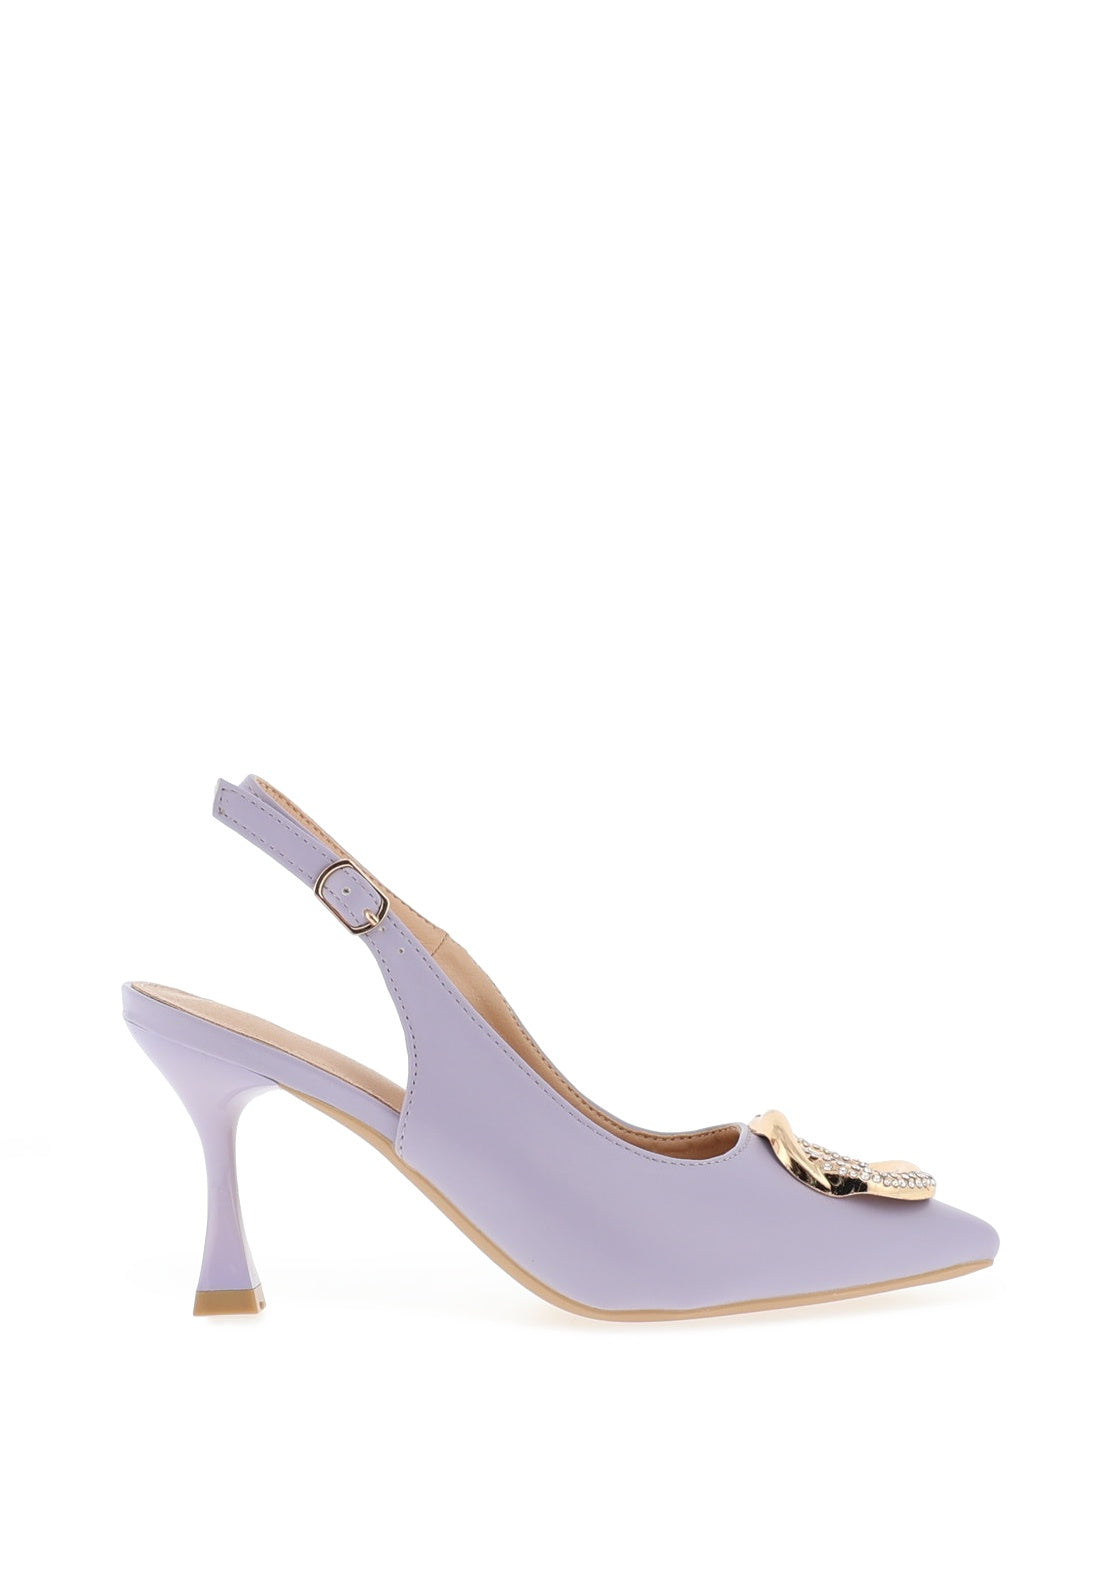 Sorento Ellingham Embellished Sling Back Heeled Shoes, Lilac - McElhinneys